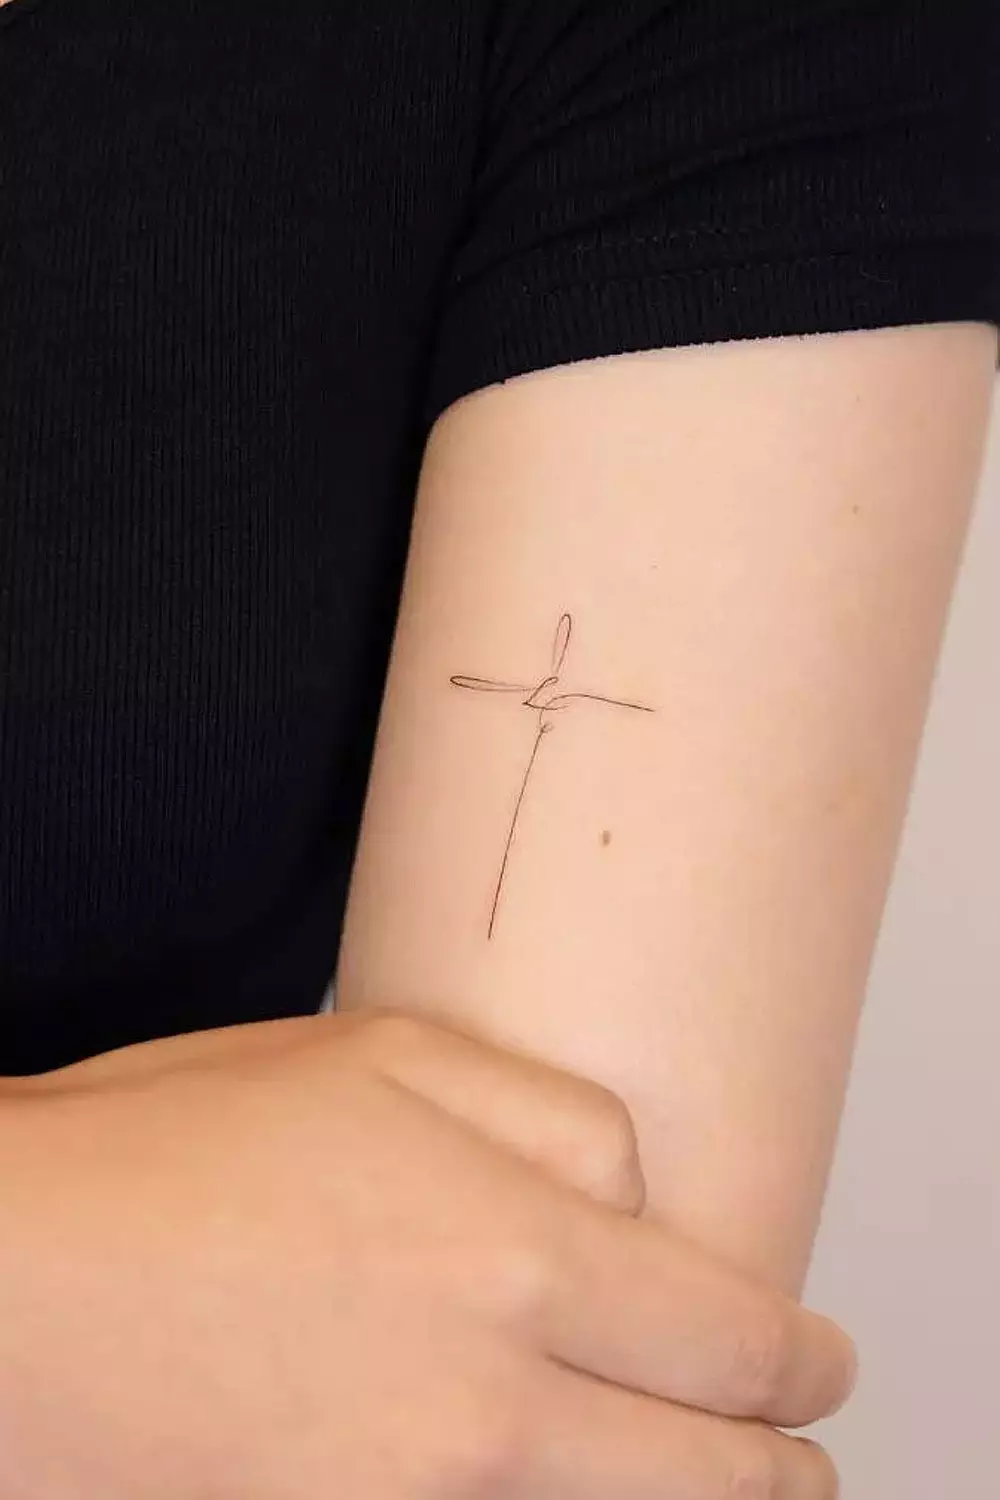 Tatuagem de cruz: 12 opções cheias de significado para se inspirar